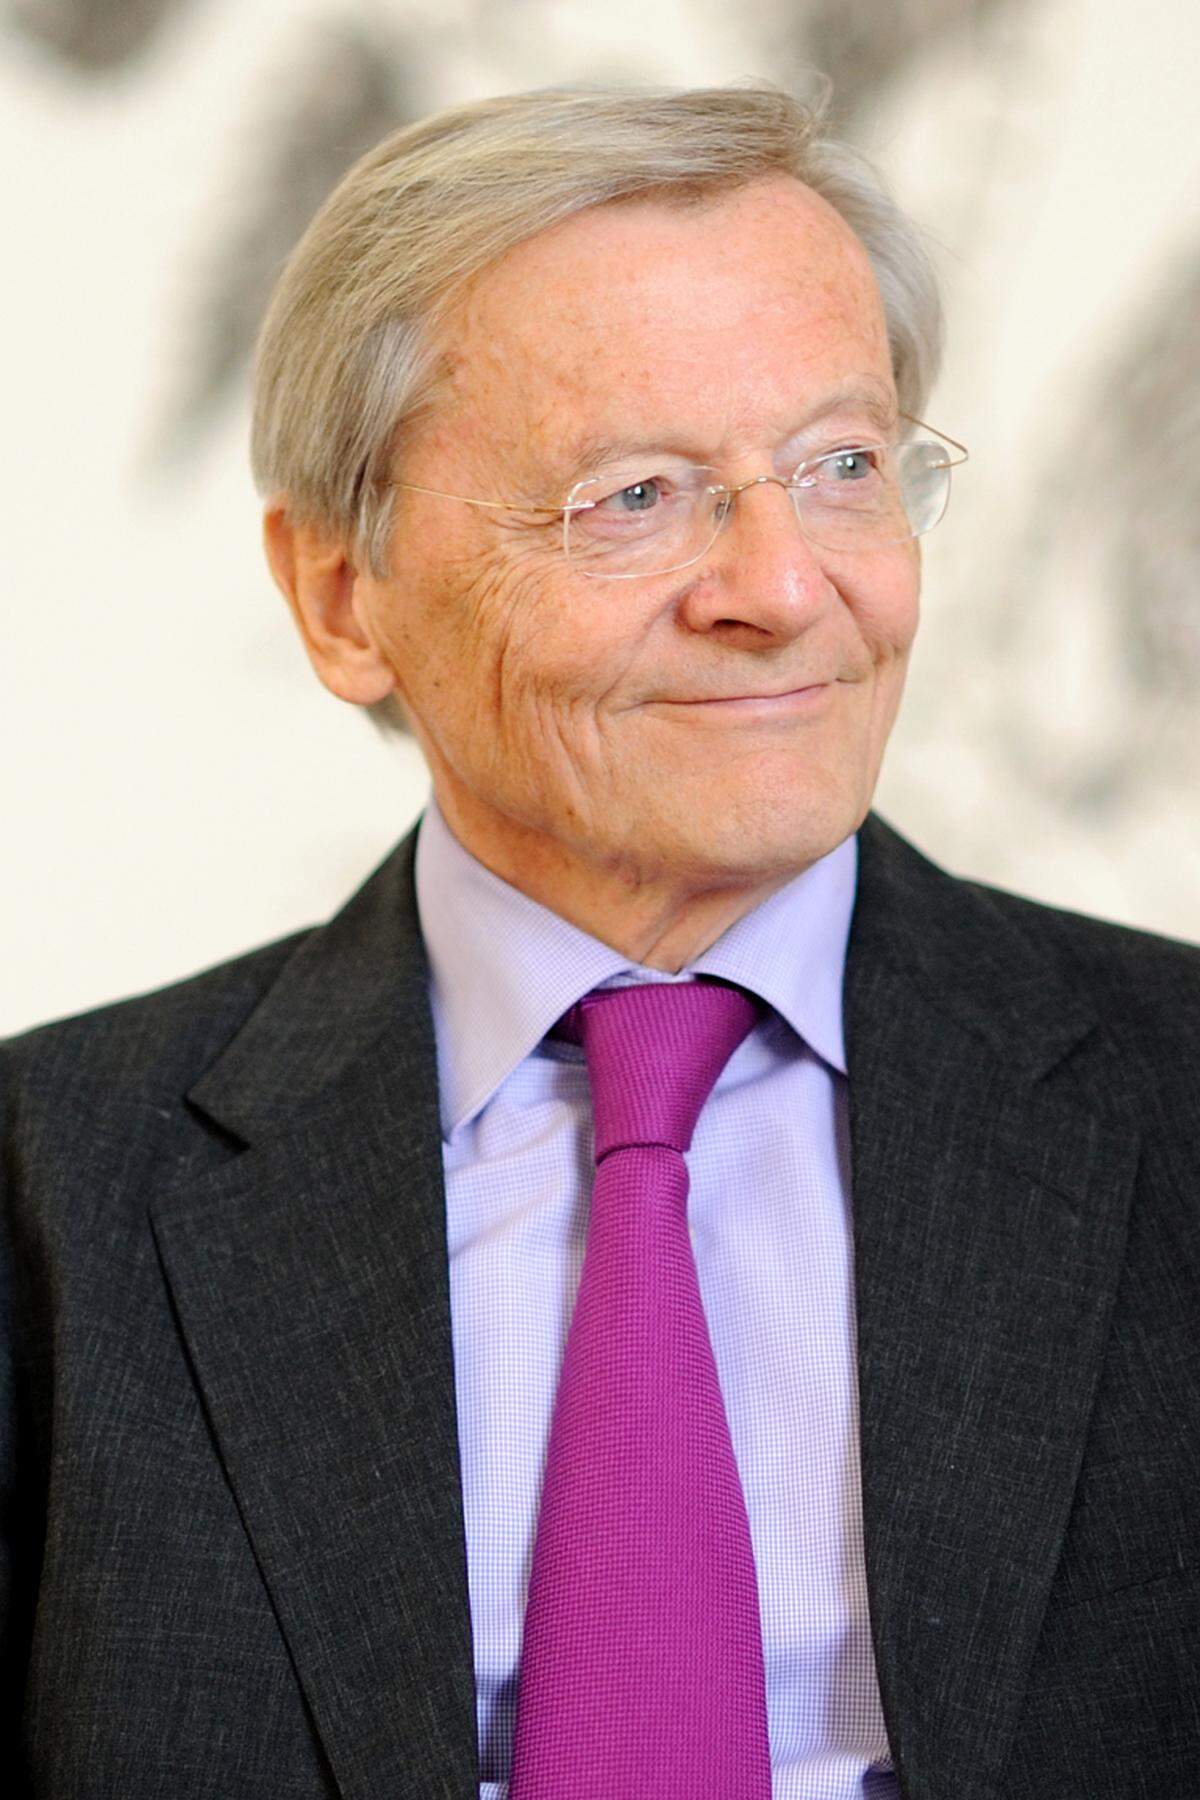 Für RWE ist unter anderem auch Wolfgang Schüssel tätig. Außerdem ist Schüssel seit April 2007 Kuratoriumsmitglied der Bertelsmann Stiftung und sitzt im europäischen Aufsichtsrat von Investcorp, einer Investmentfirma.